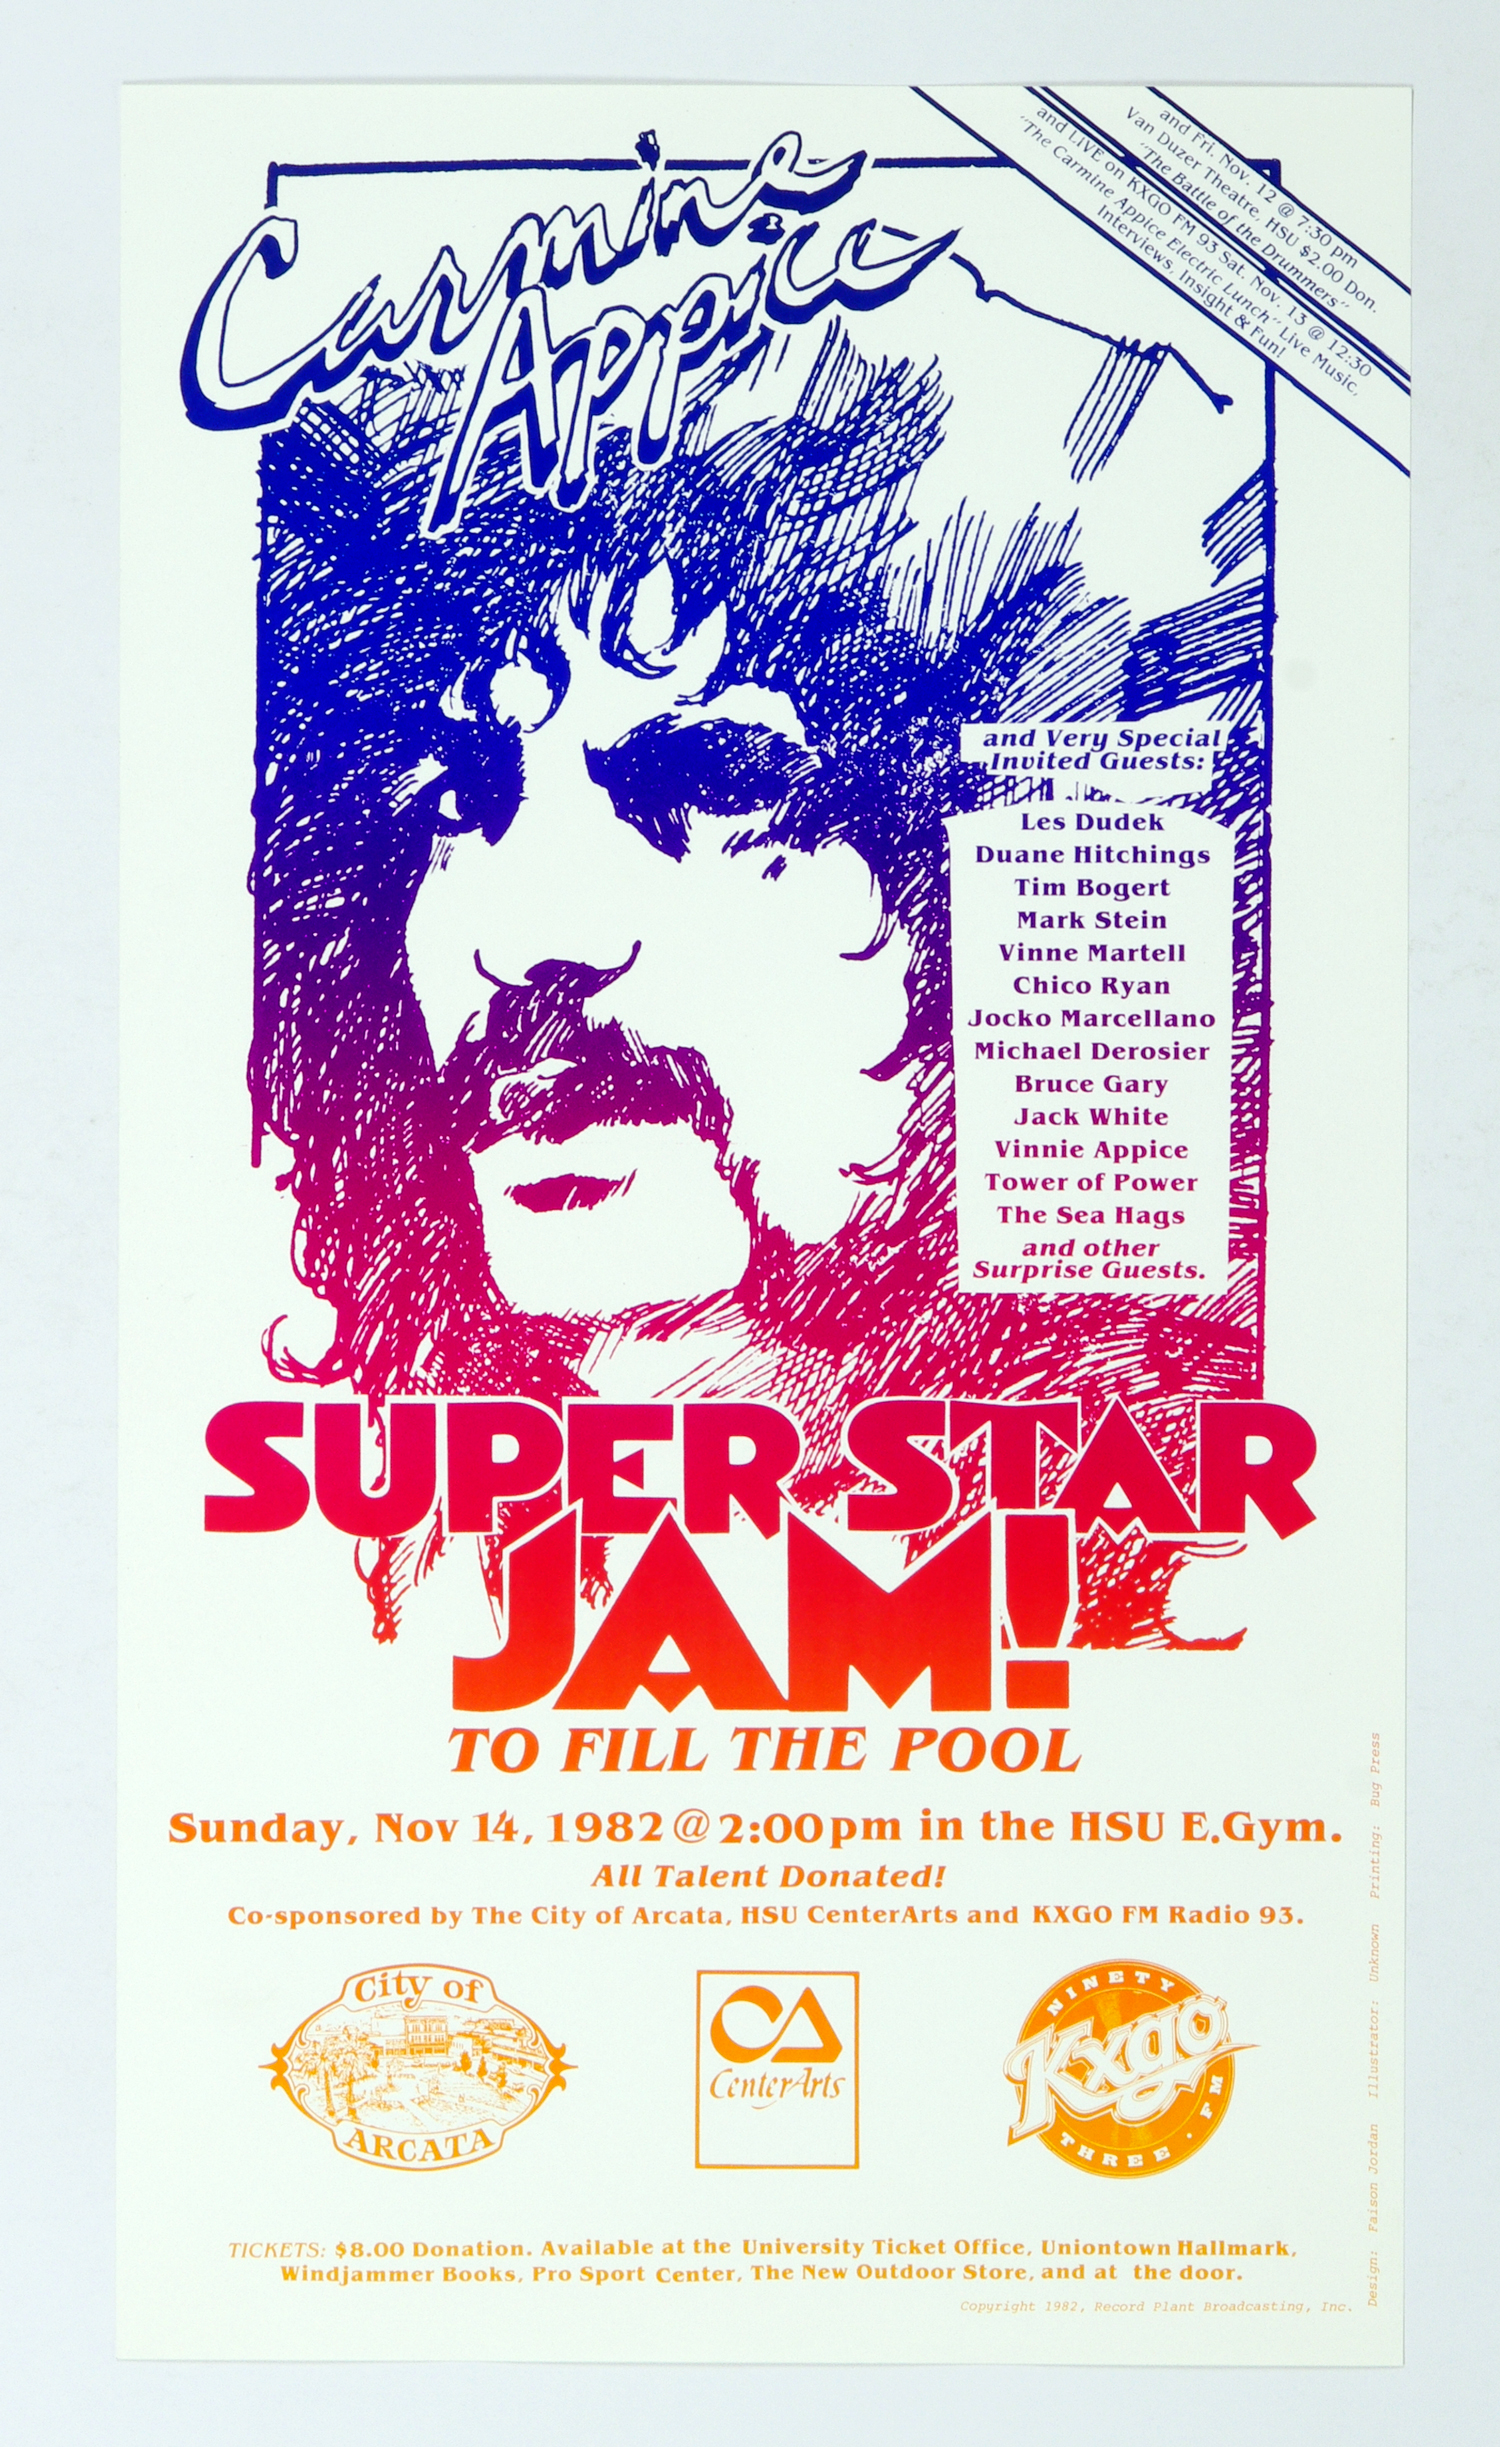 Carmine Appice Poster Superstar Jam 1982 Nov 14 Humboldt State East Gym